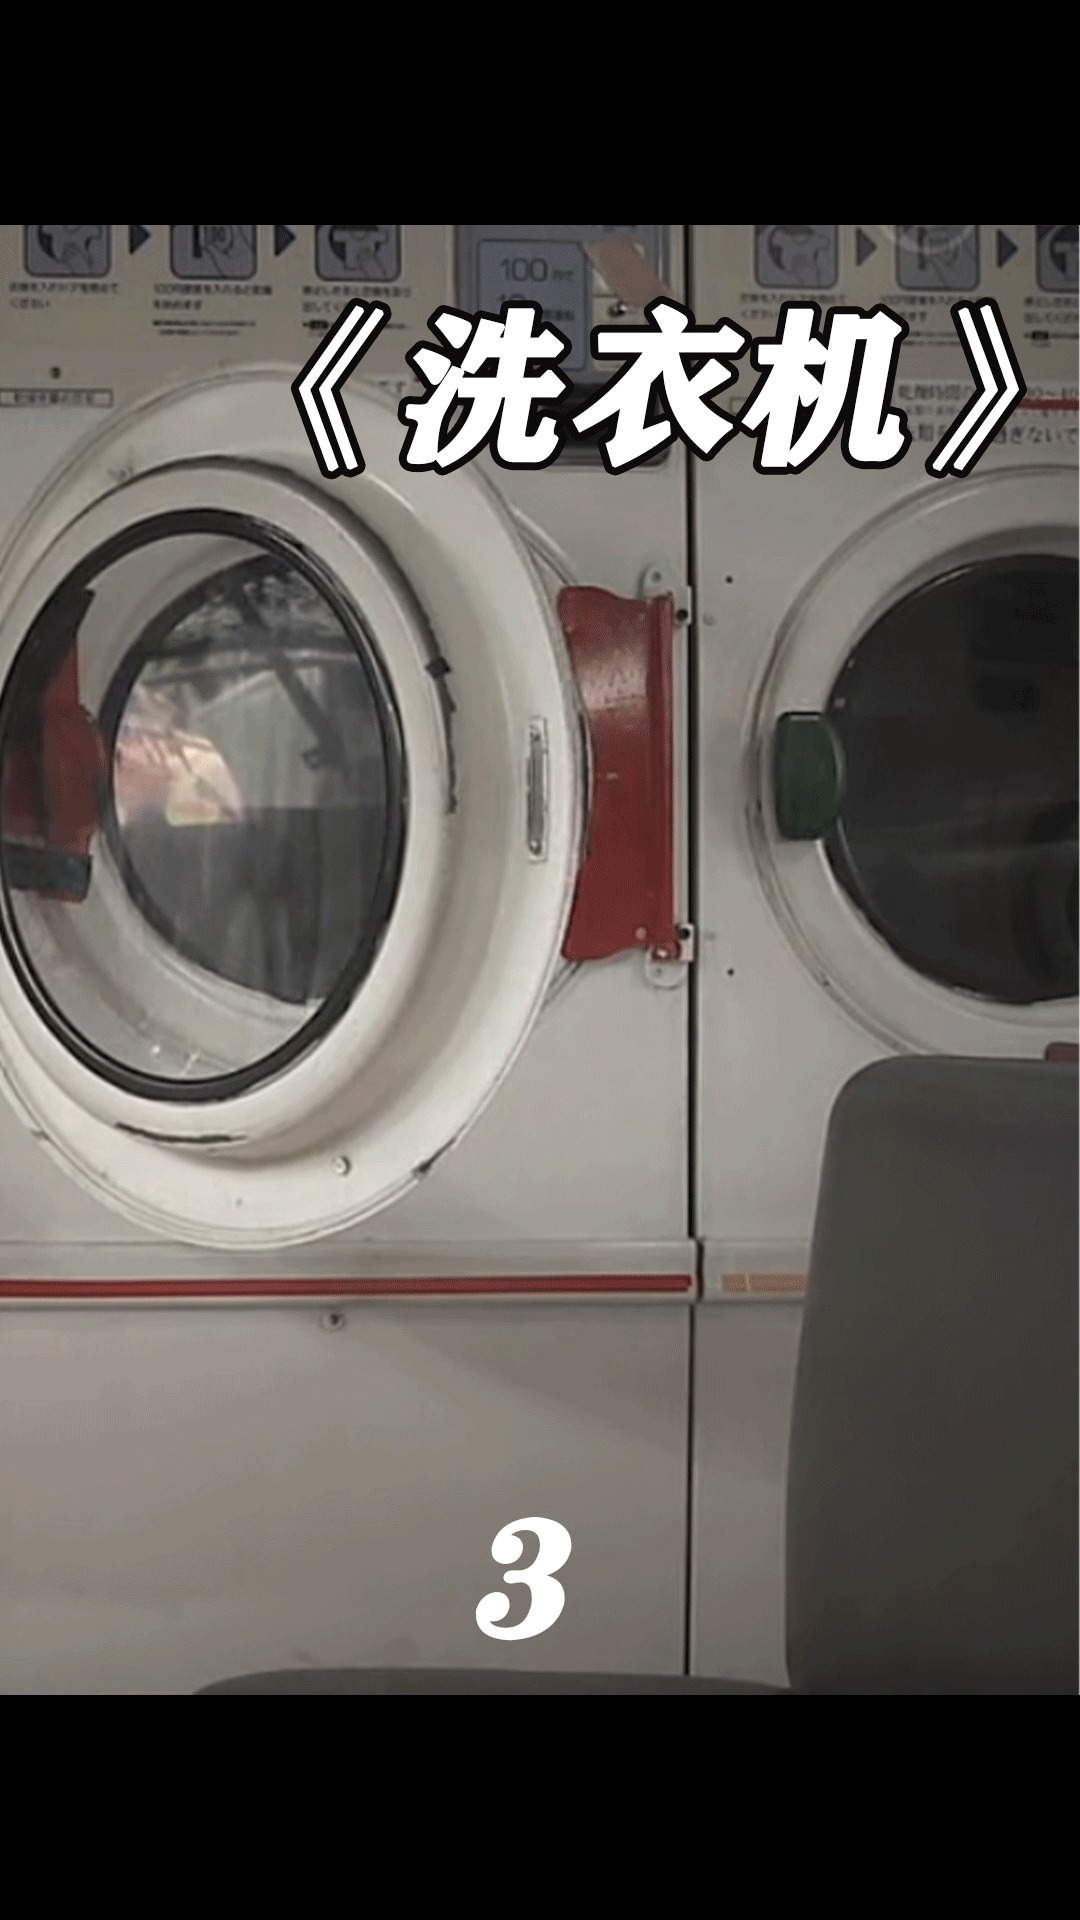 电影解说这样的洗衣机你值得拥有